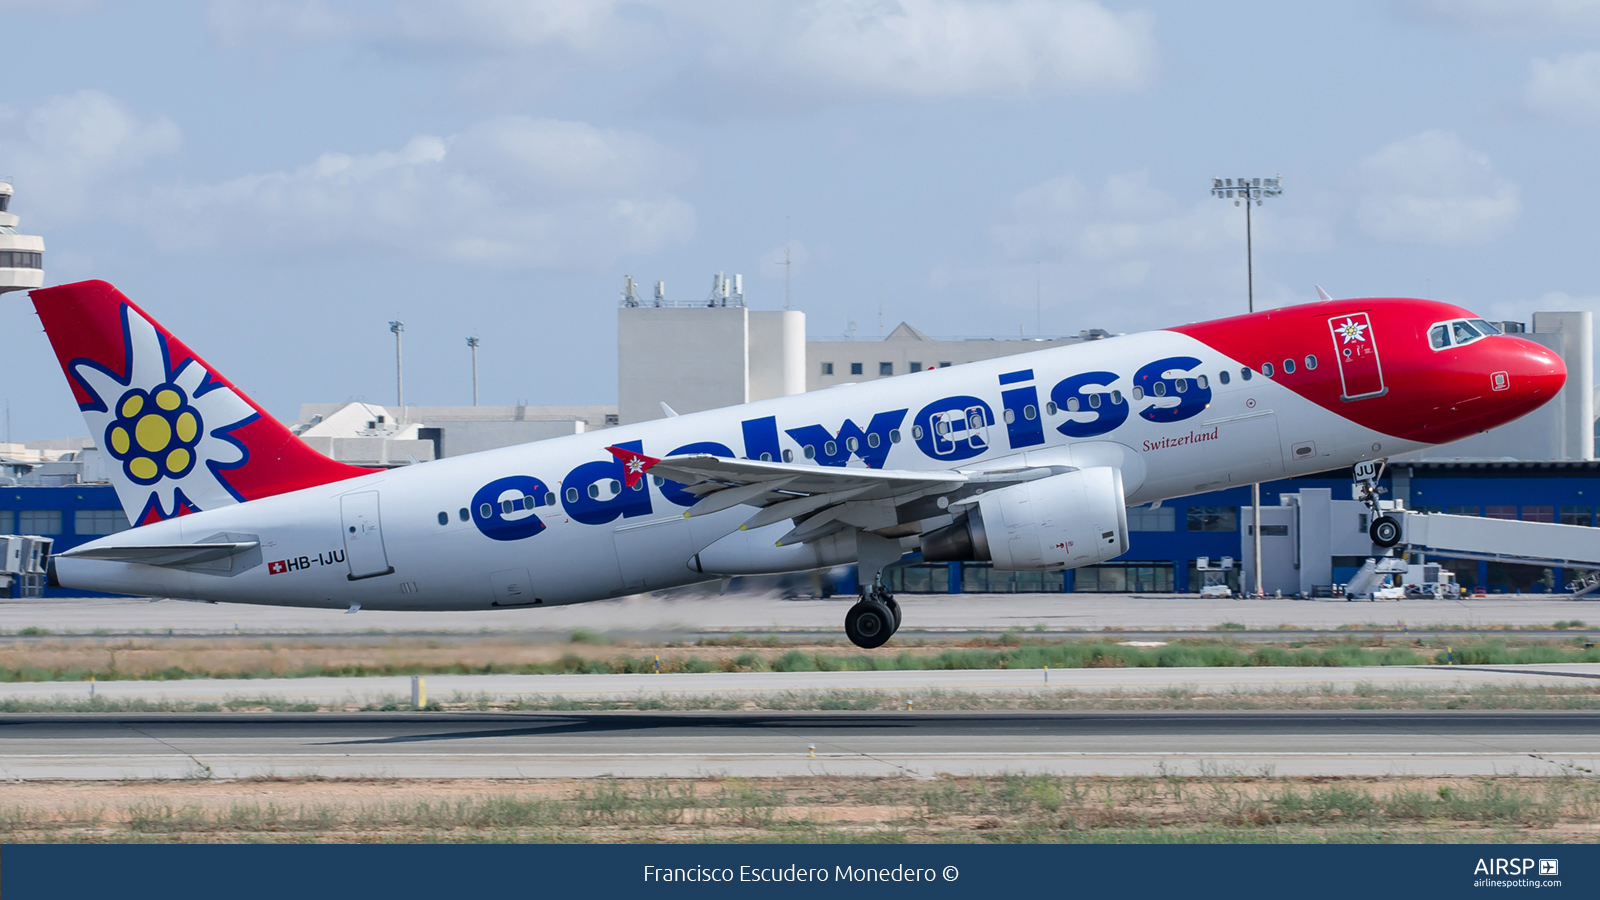 Edelweiss  Airbus A320  HB-IJU